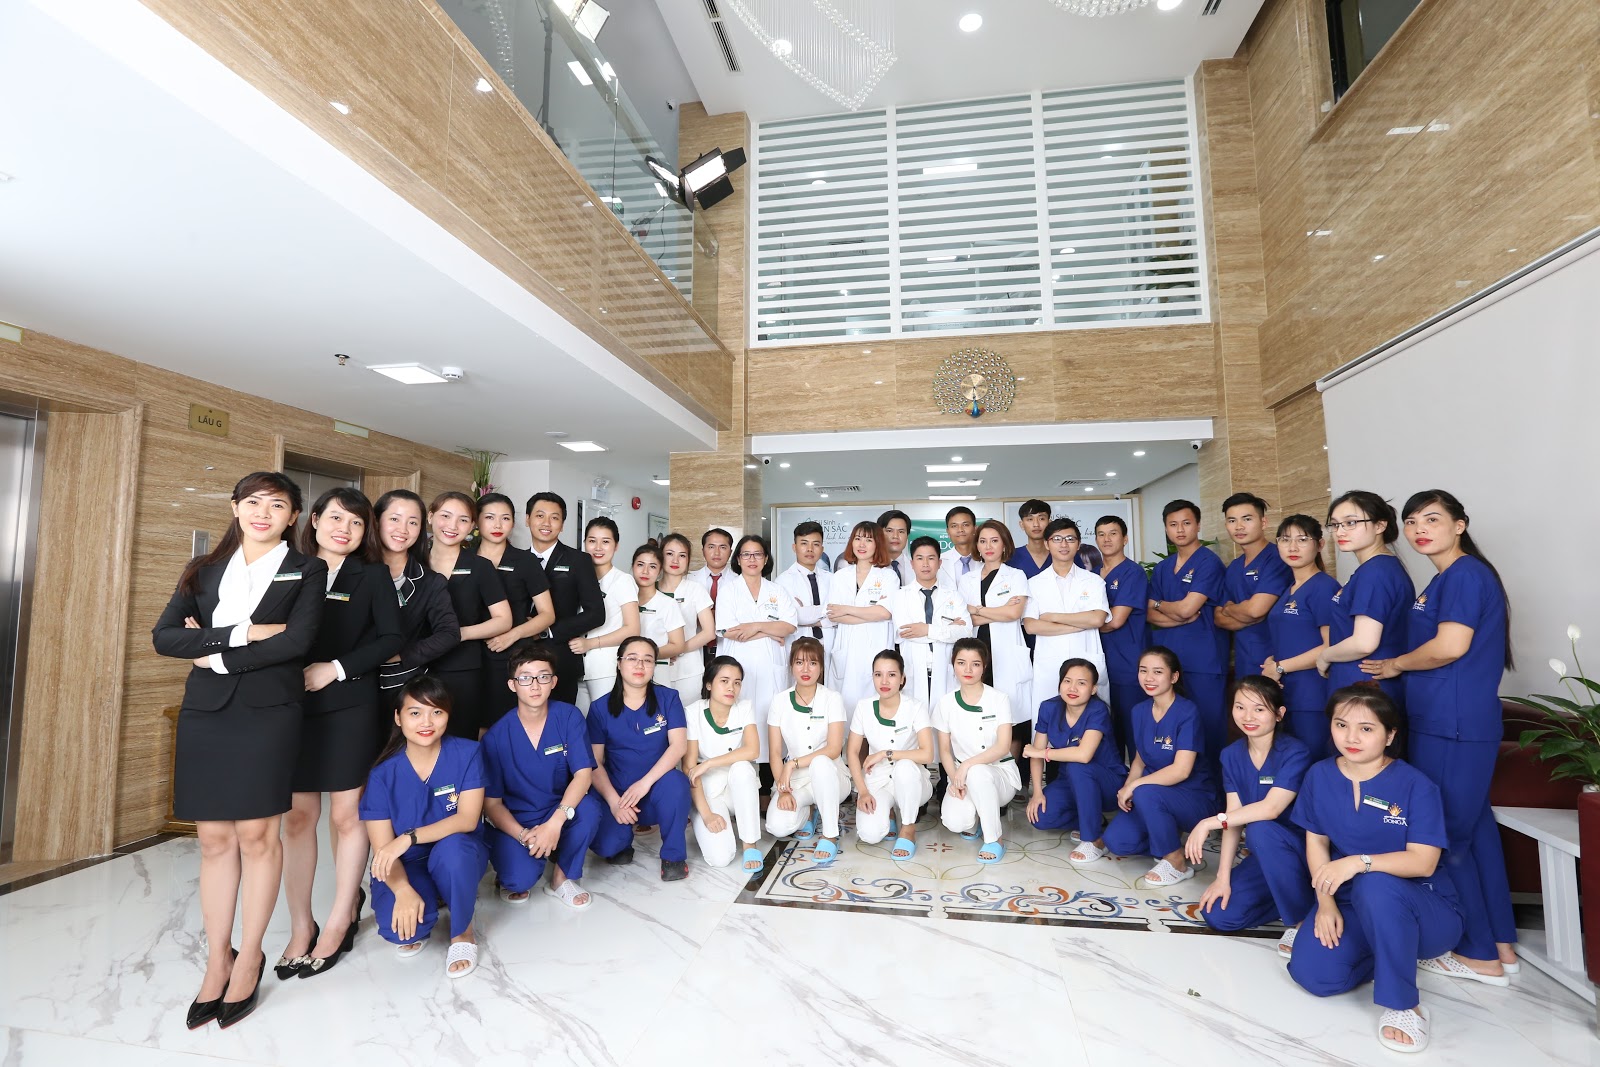 Đội ngũ bác sĩ chuyên nghiệp, trình độ cao đến từ Hàn Quốc, Hoa Kỳ, Nhật Bản,...